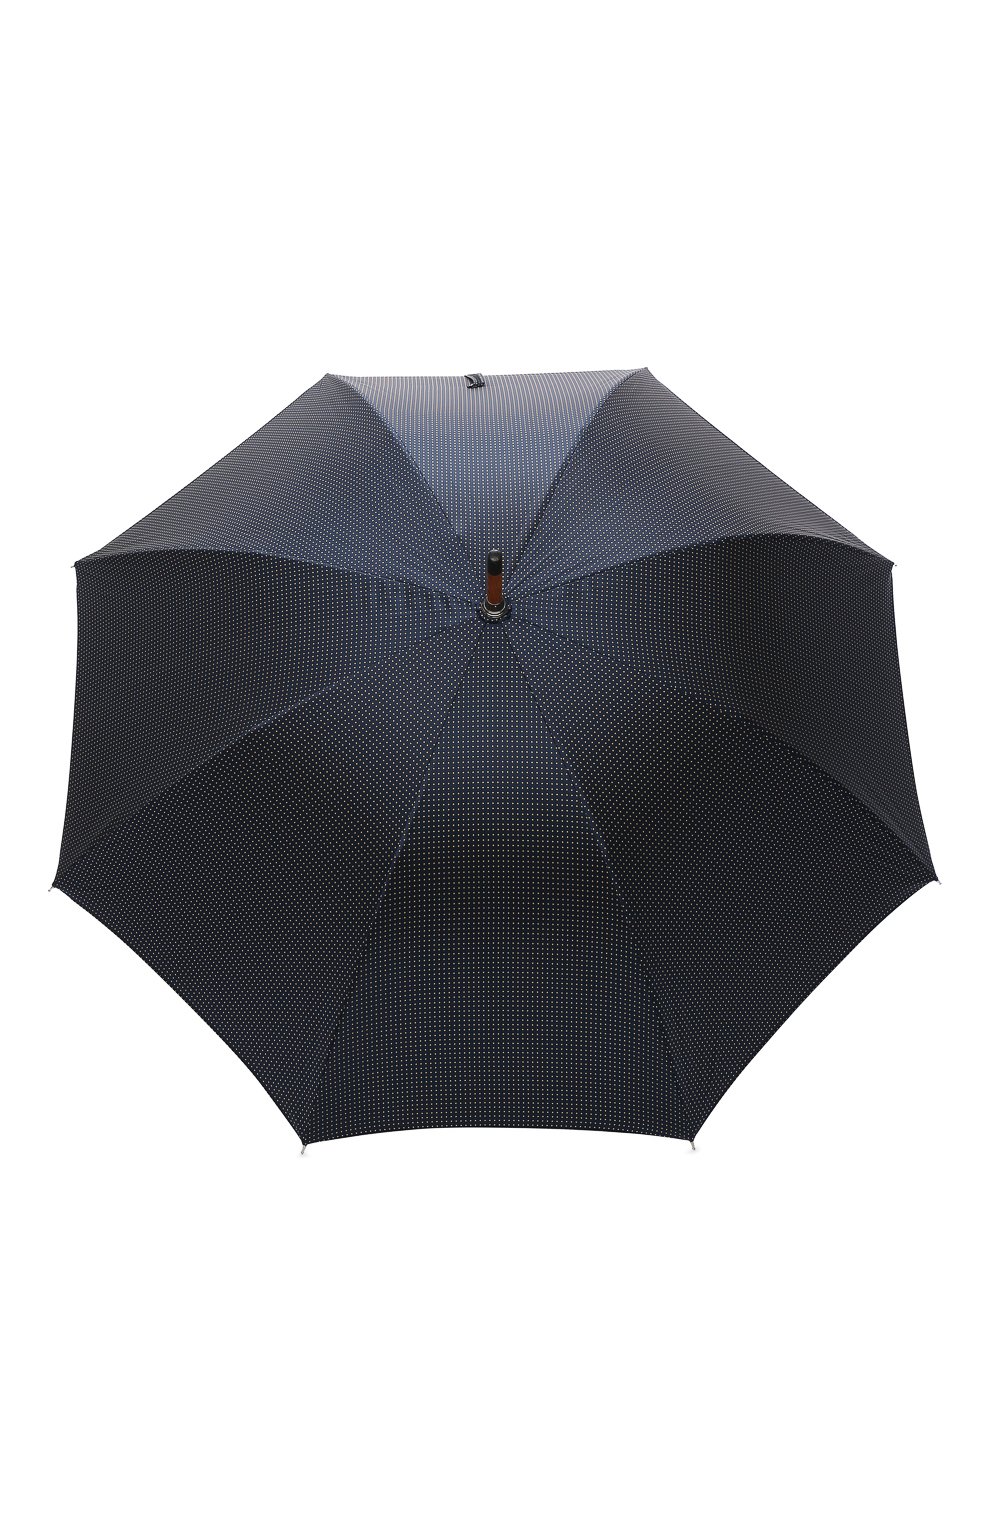 Мужской зонт-трость PASOTTI OMBRELLI темно-синего цвета, арт. 142/PUNT0/4 | Фото 1 (Материал: Текстиль, Синтетический материал, Металл)